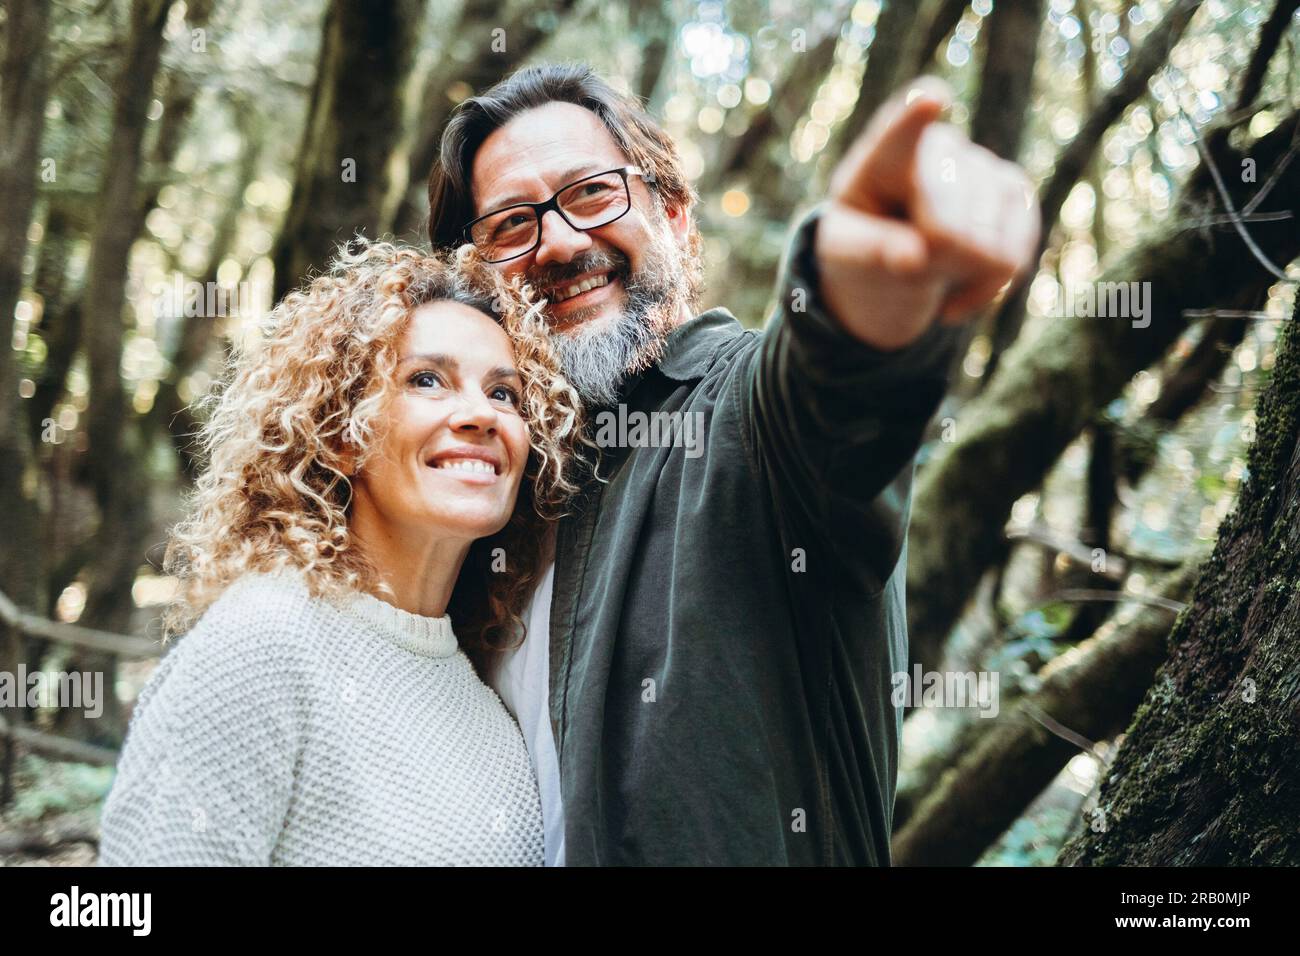 Glückliches Paar von Touristen, die einen malerischen Ort im Naturwald mit grünen Bäumen und einem guten Umweltkonzept bewundern. Die Menschen genießen gemeinsam einen alternativen Wochenendurlaub und Reisen im Freien Stockfoto